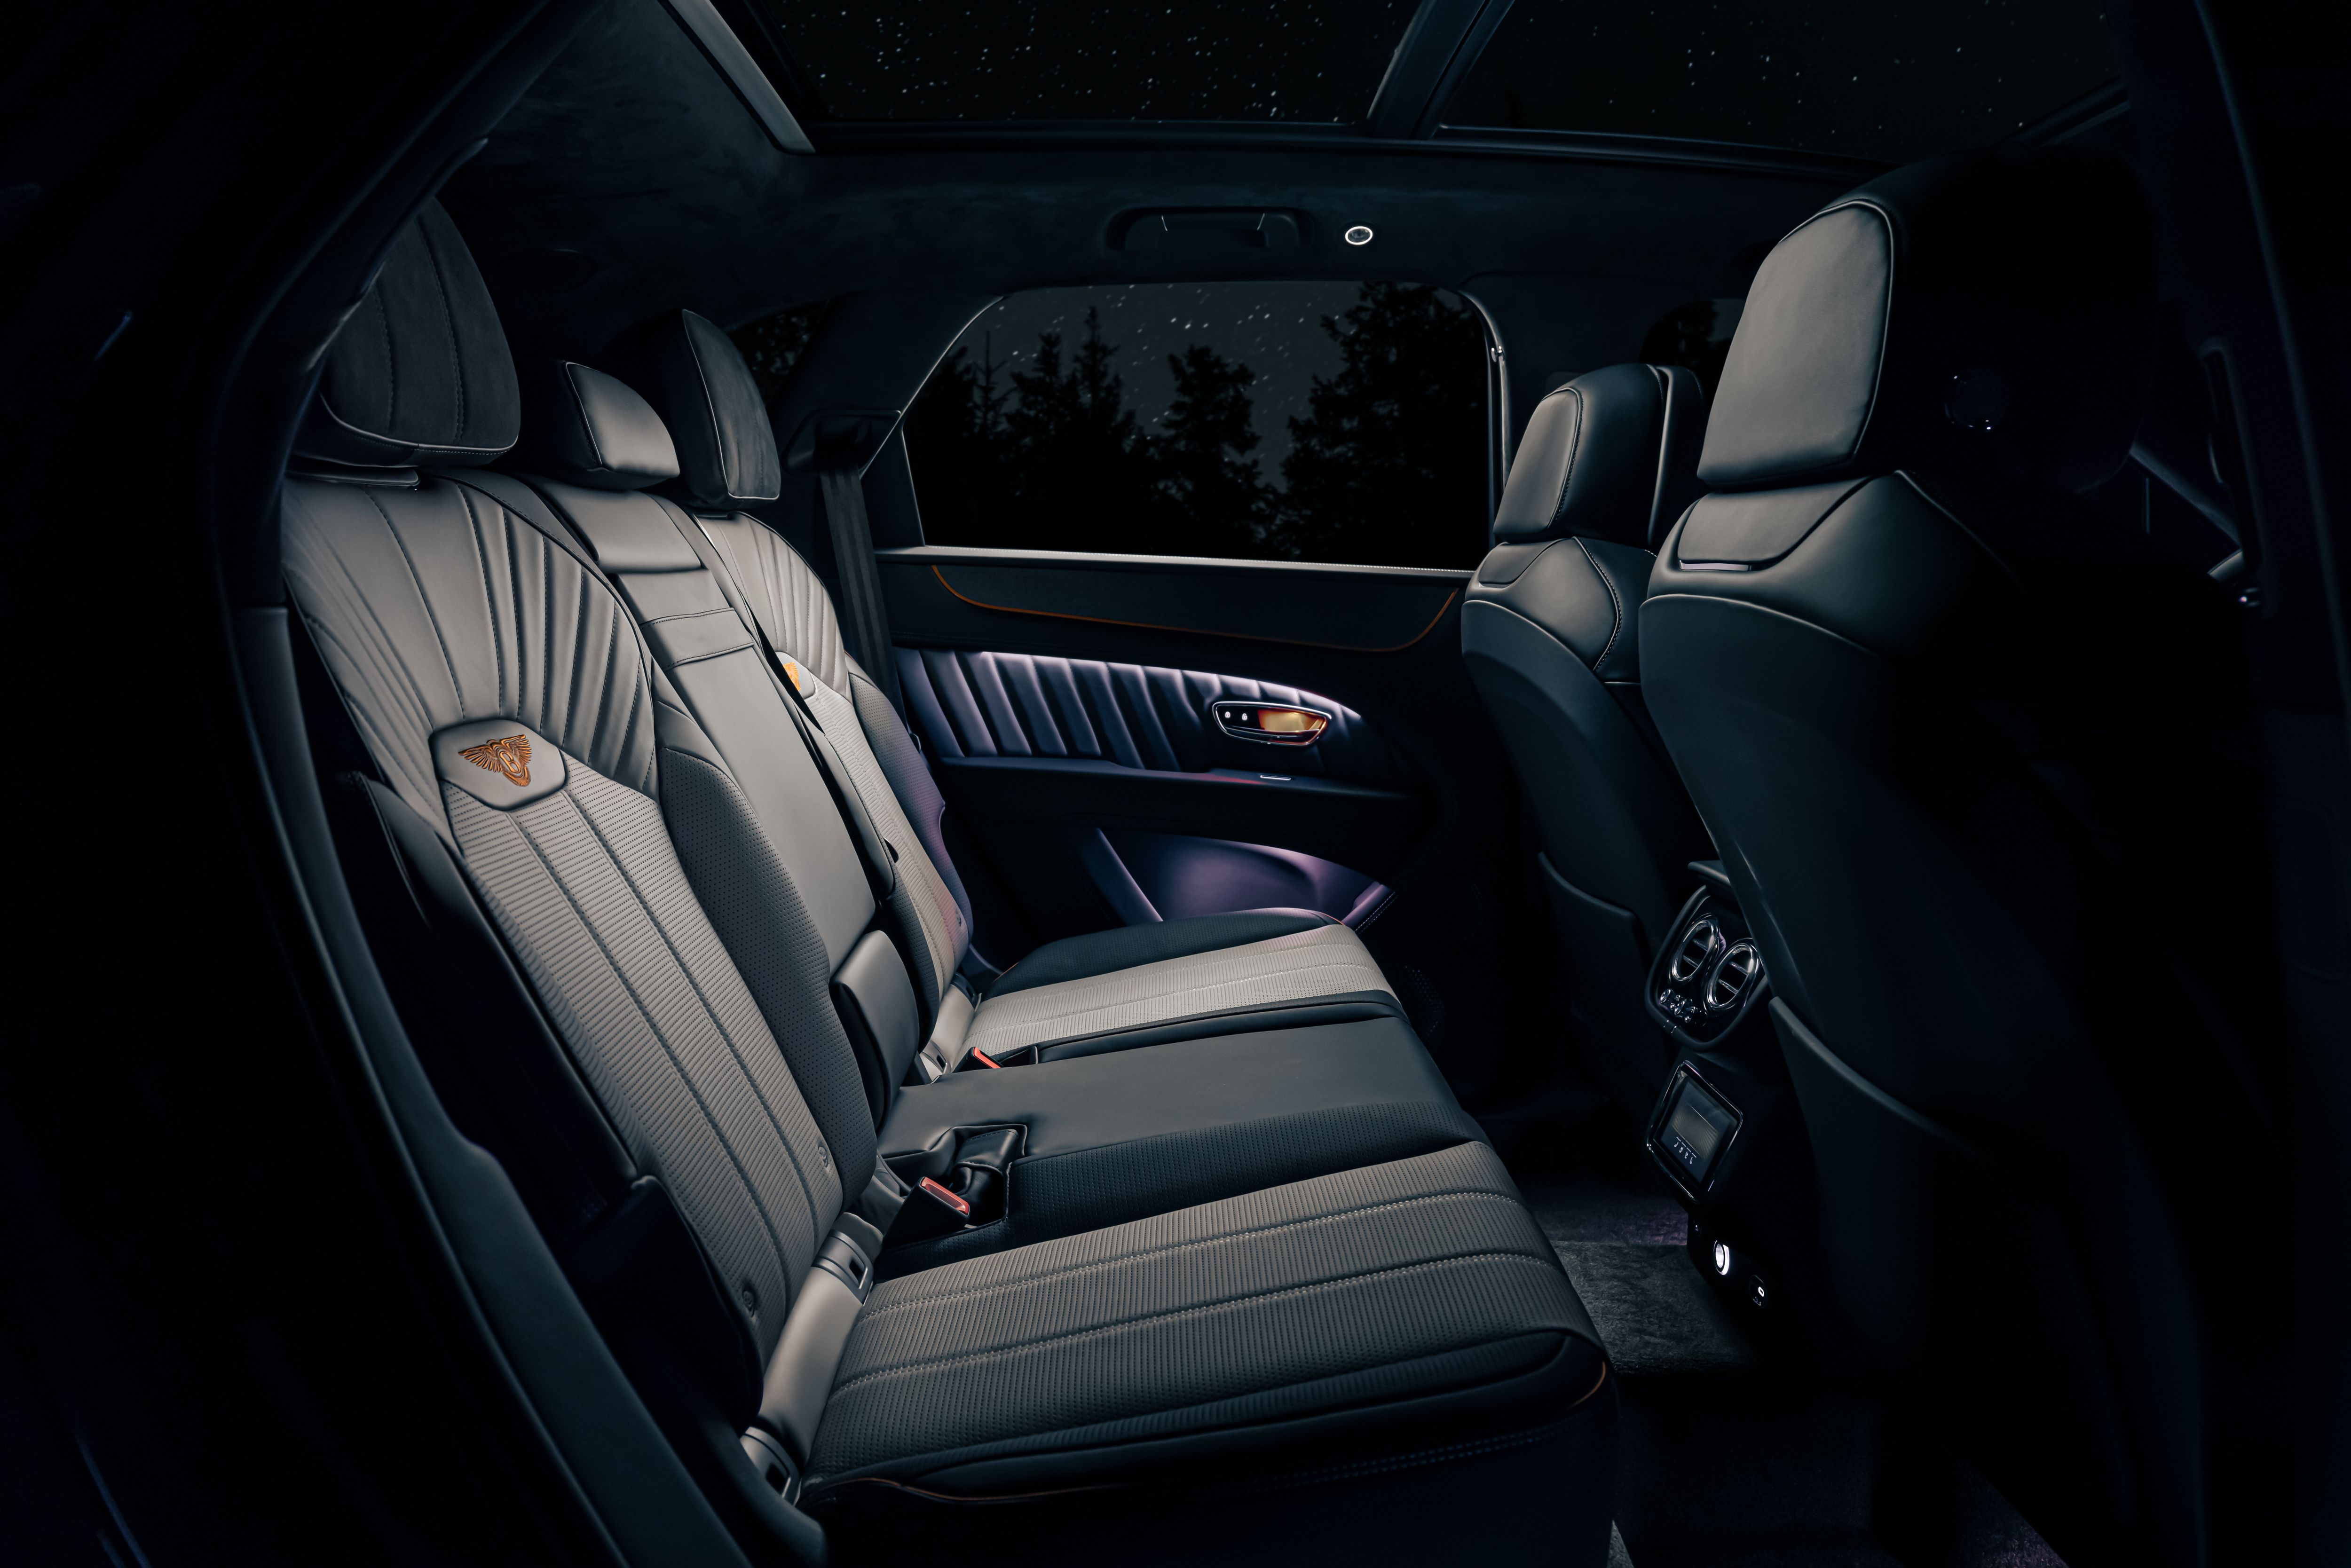 2022 Bentley Bentayga Space Edition